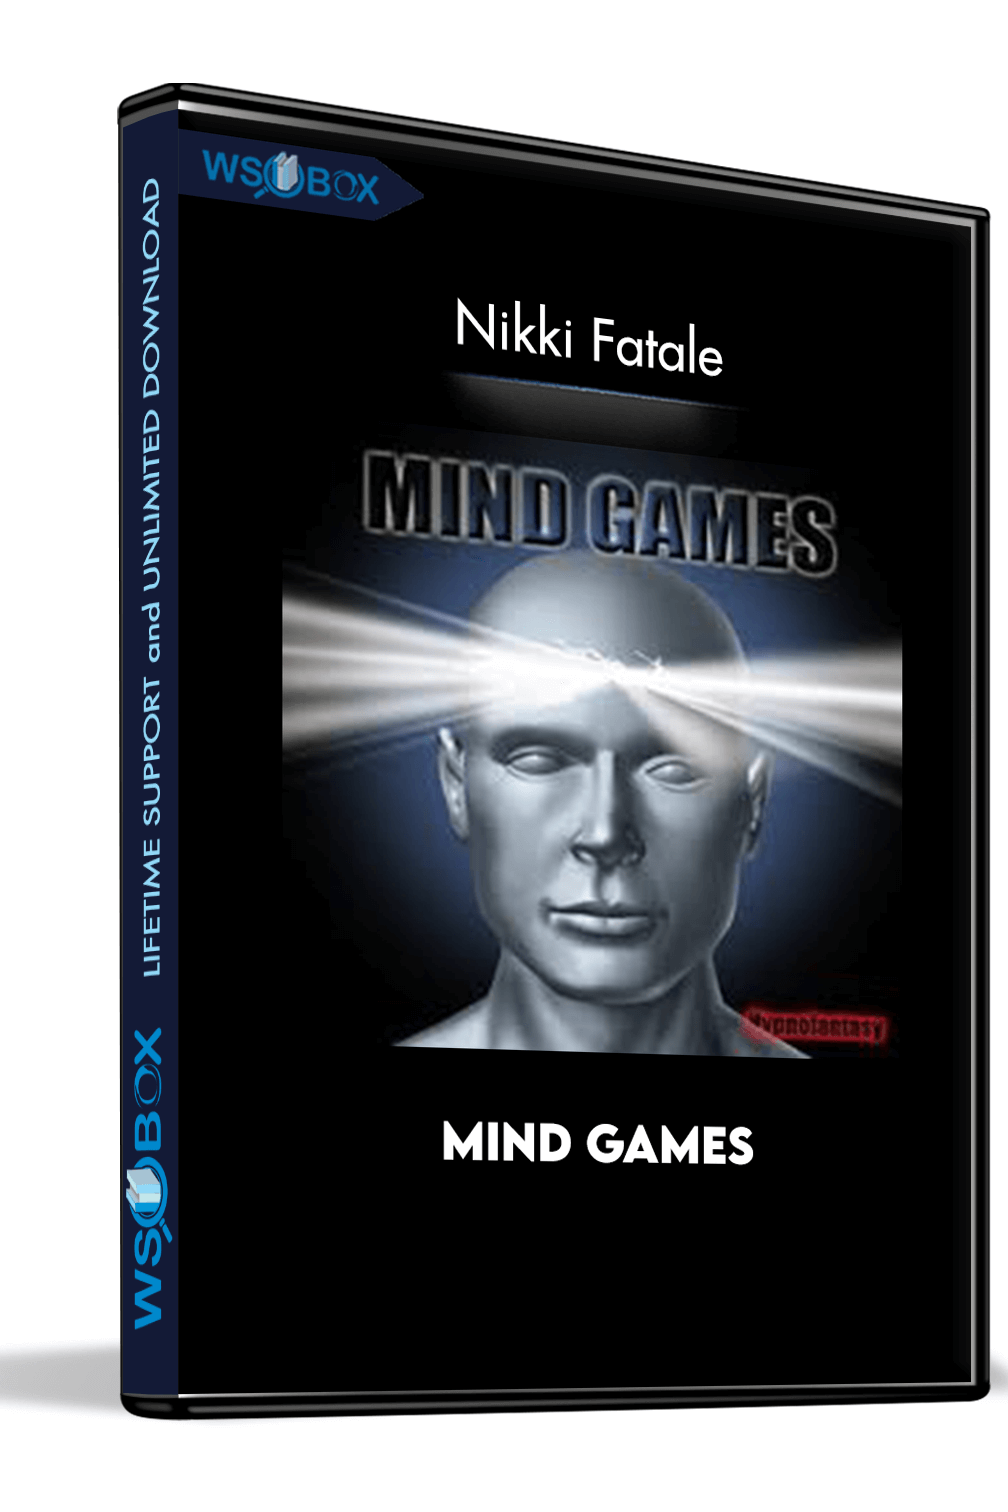 mind-games-nikki-fatale